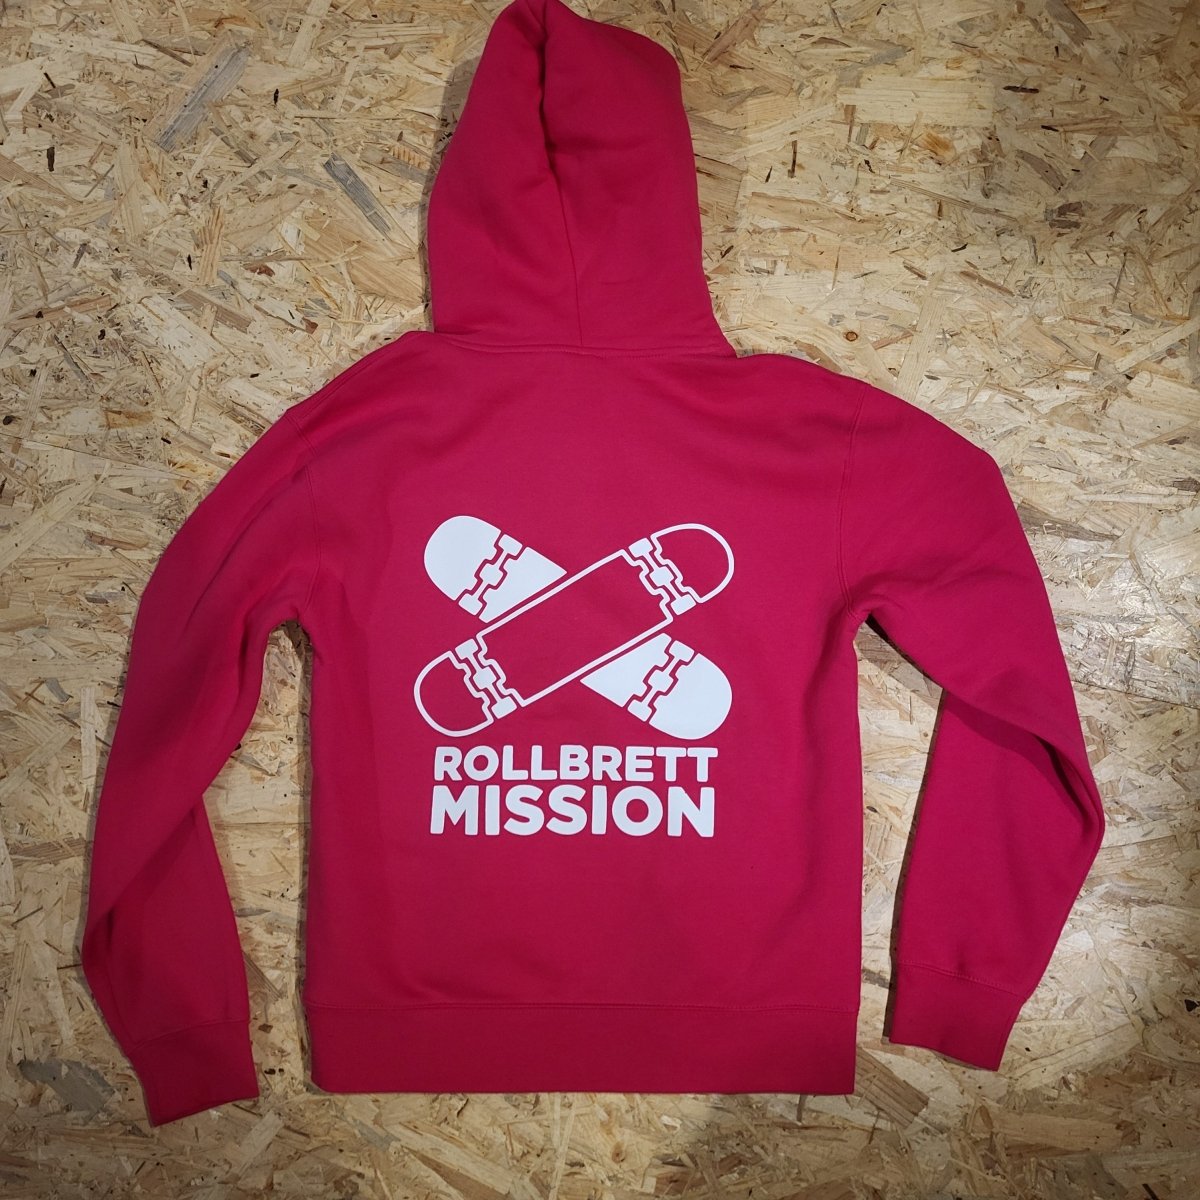 Rollbrett Mission Old School Hoodie pink - Shirts & Tops - Rollbrett Mission